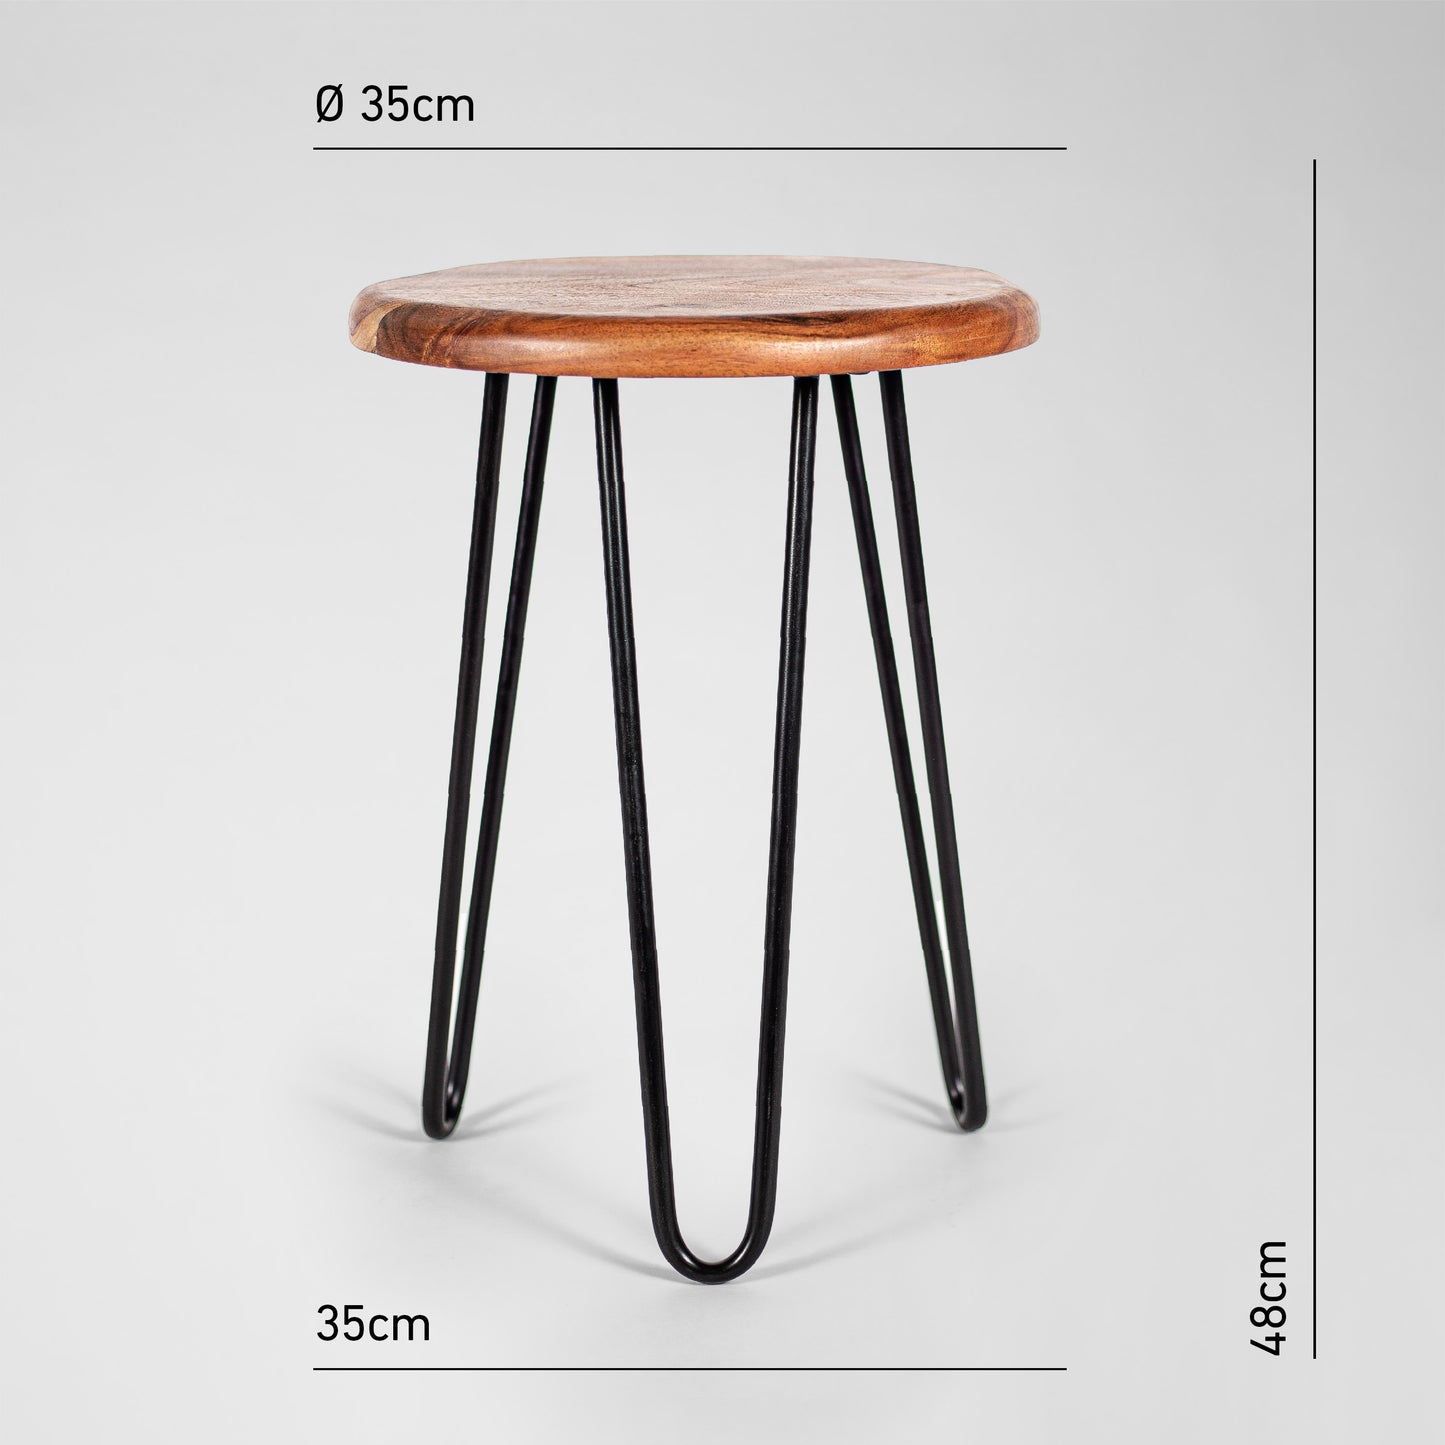 HairPin 103 – Industrie-Design Hocker aus Metall mit Holzsitz in schwarz oder kupfer